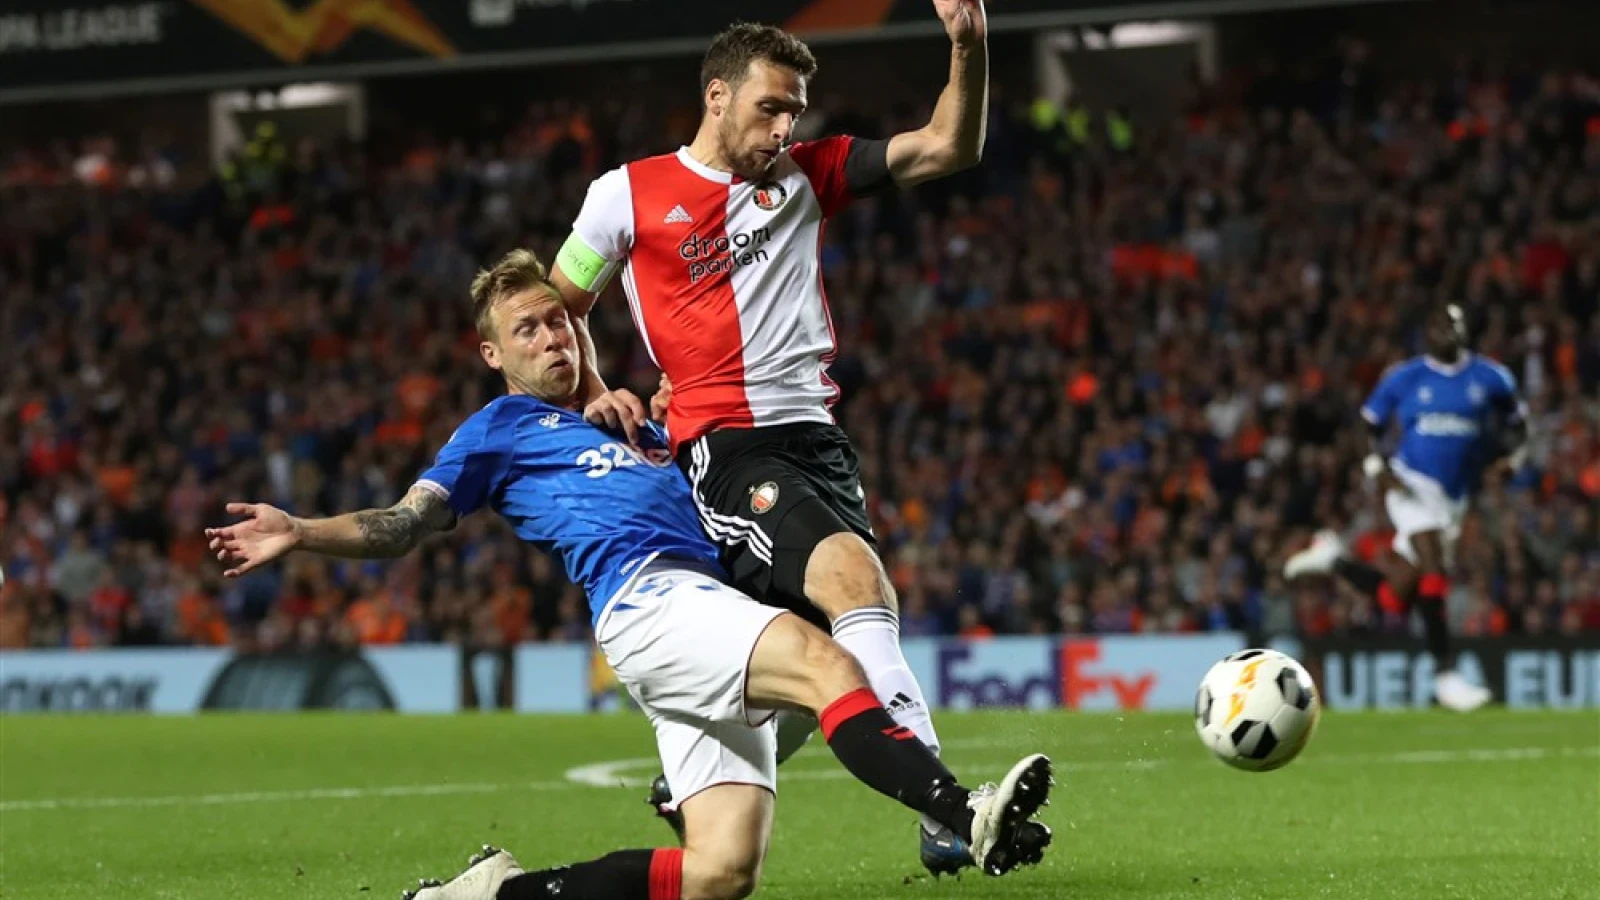 LIVE | Rangers FC - Feyenoord 1-0 | Einde wedstrijd